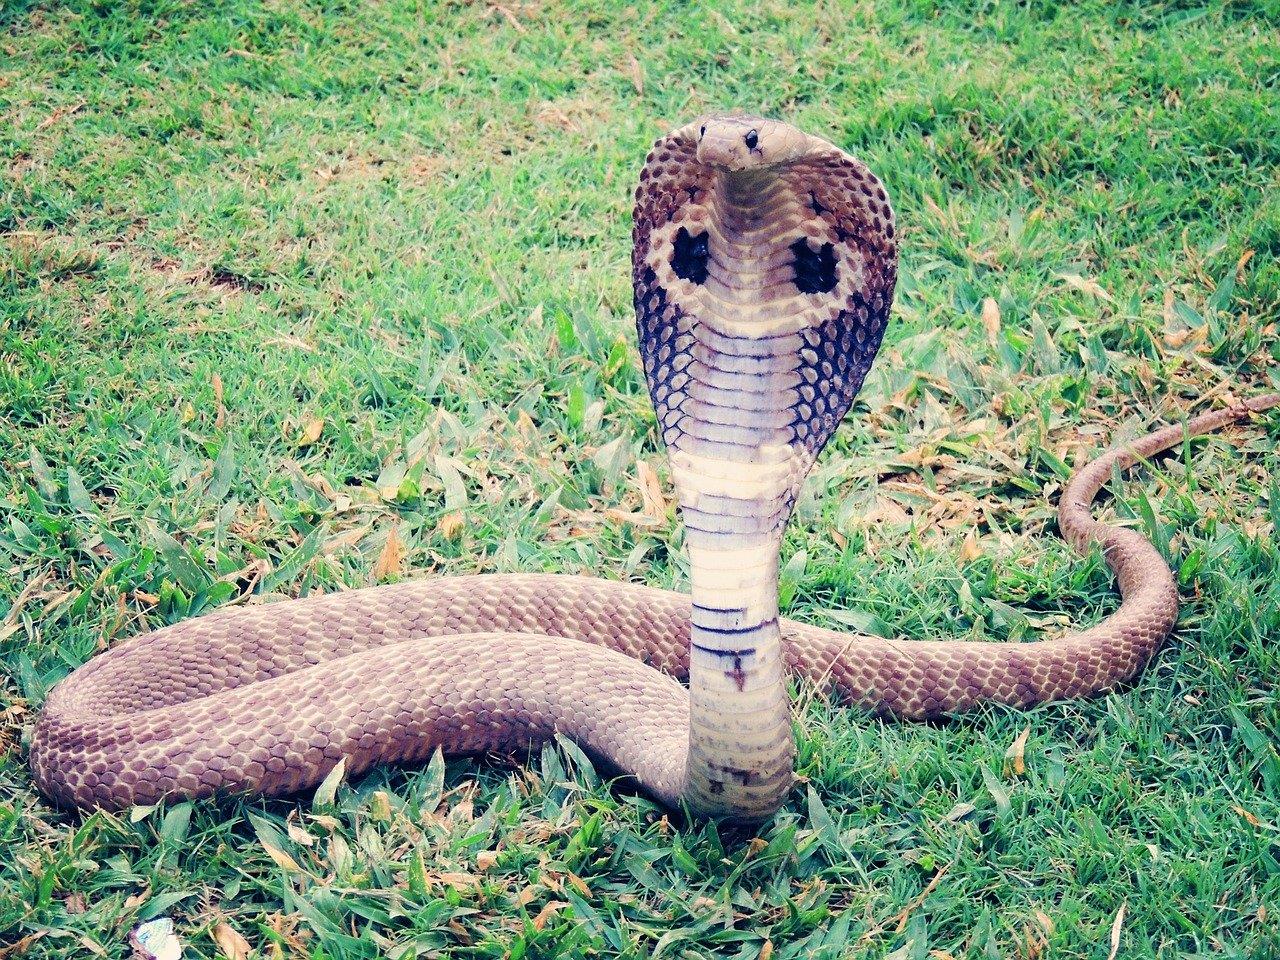 Bei der entkommenen Schlange könnte es sich um eine Kobra handeln.